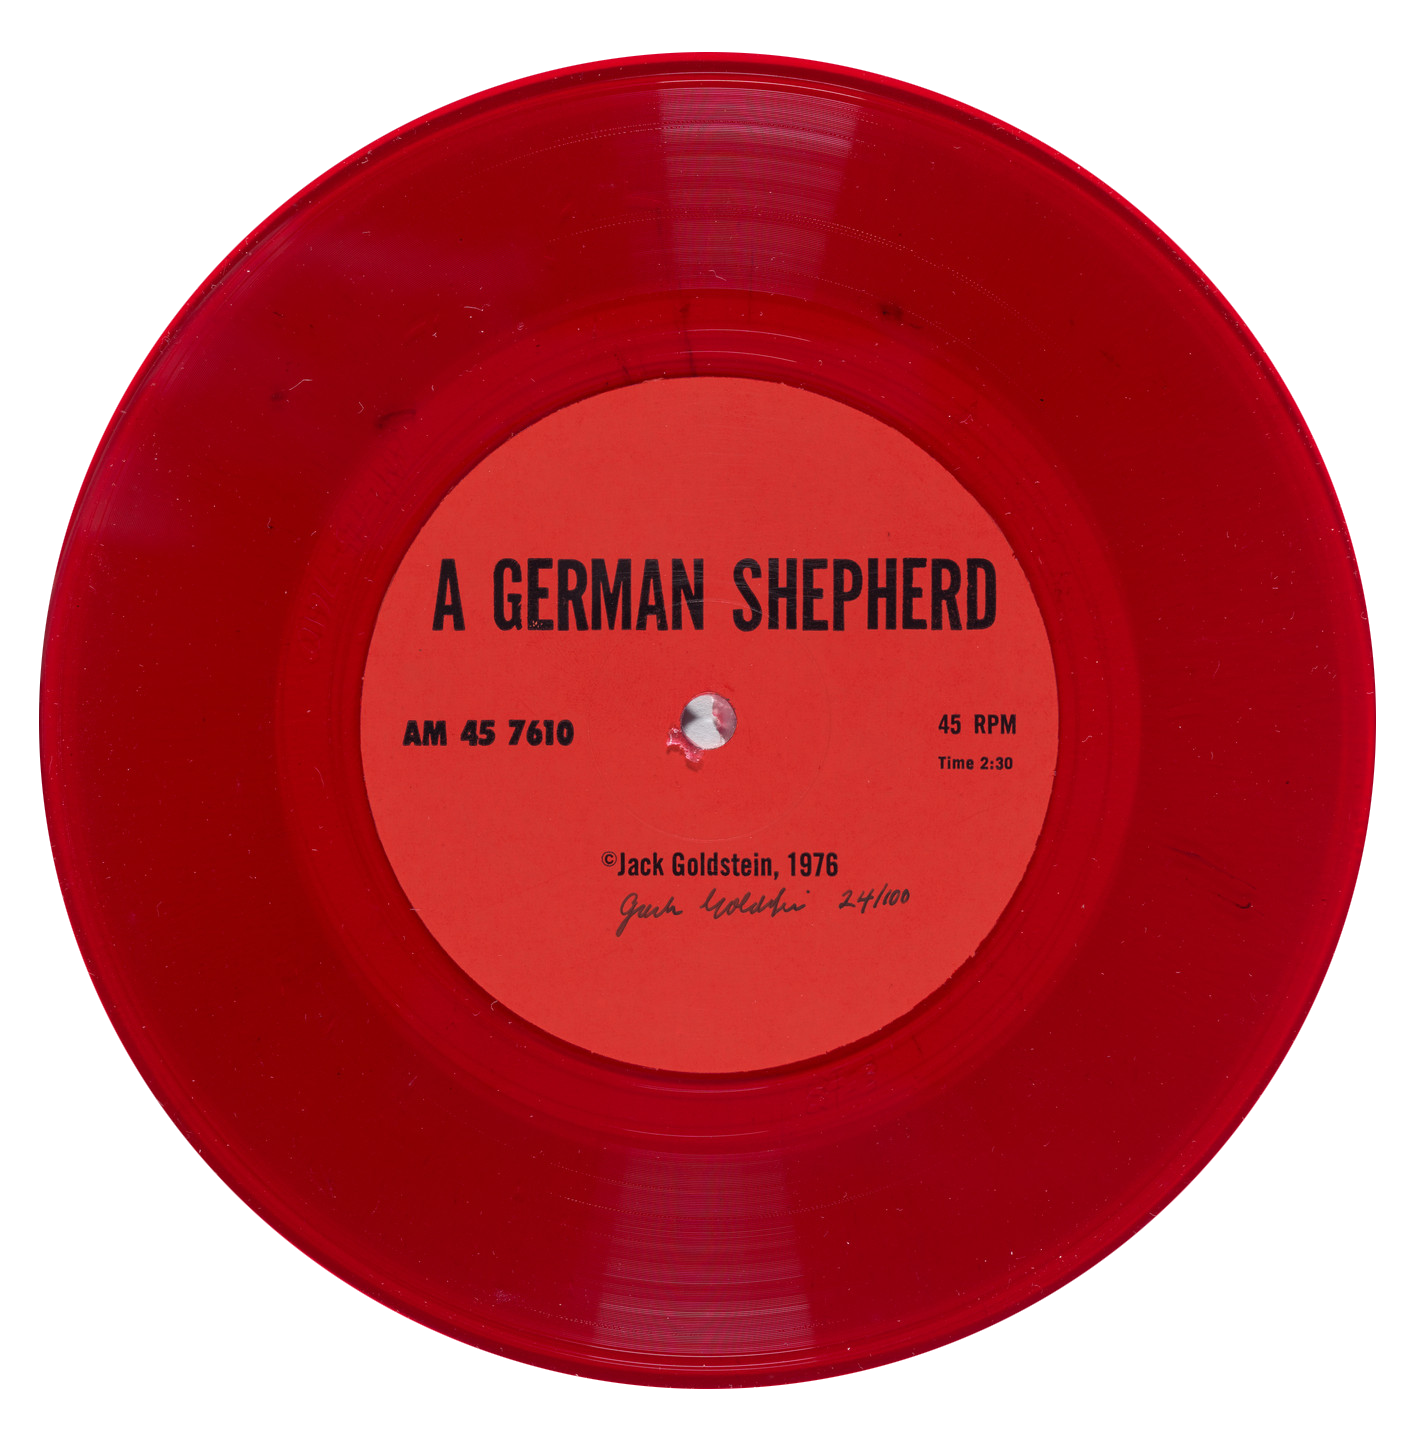  A GERMAN SHEPHERD 
Red vinyl - 45 rpm 7-inch record

A German Shepherd est un des neuf éléments constitutifs de :
A Suite of Nine 45 rpm 7-Inch Records with Sound Effects
1976